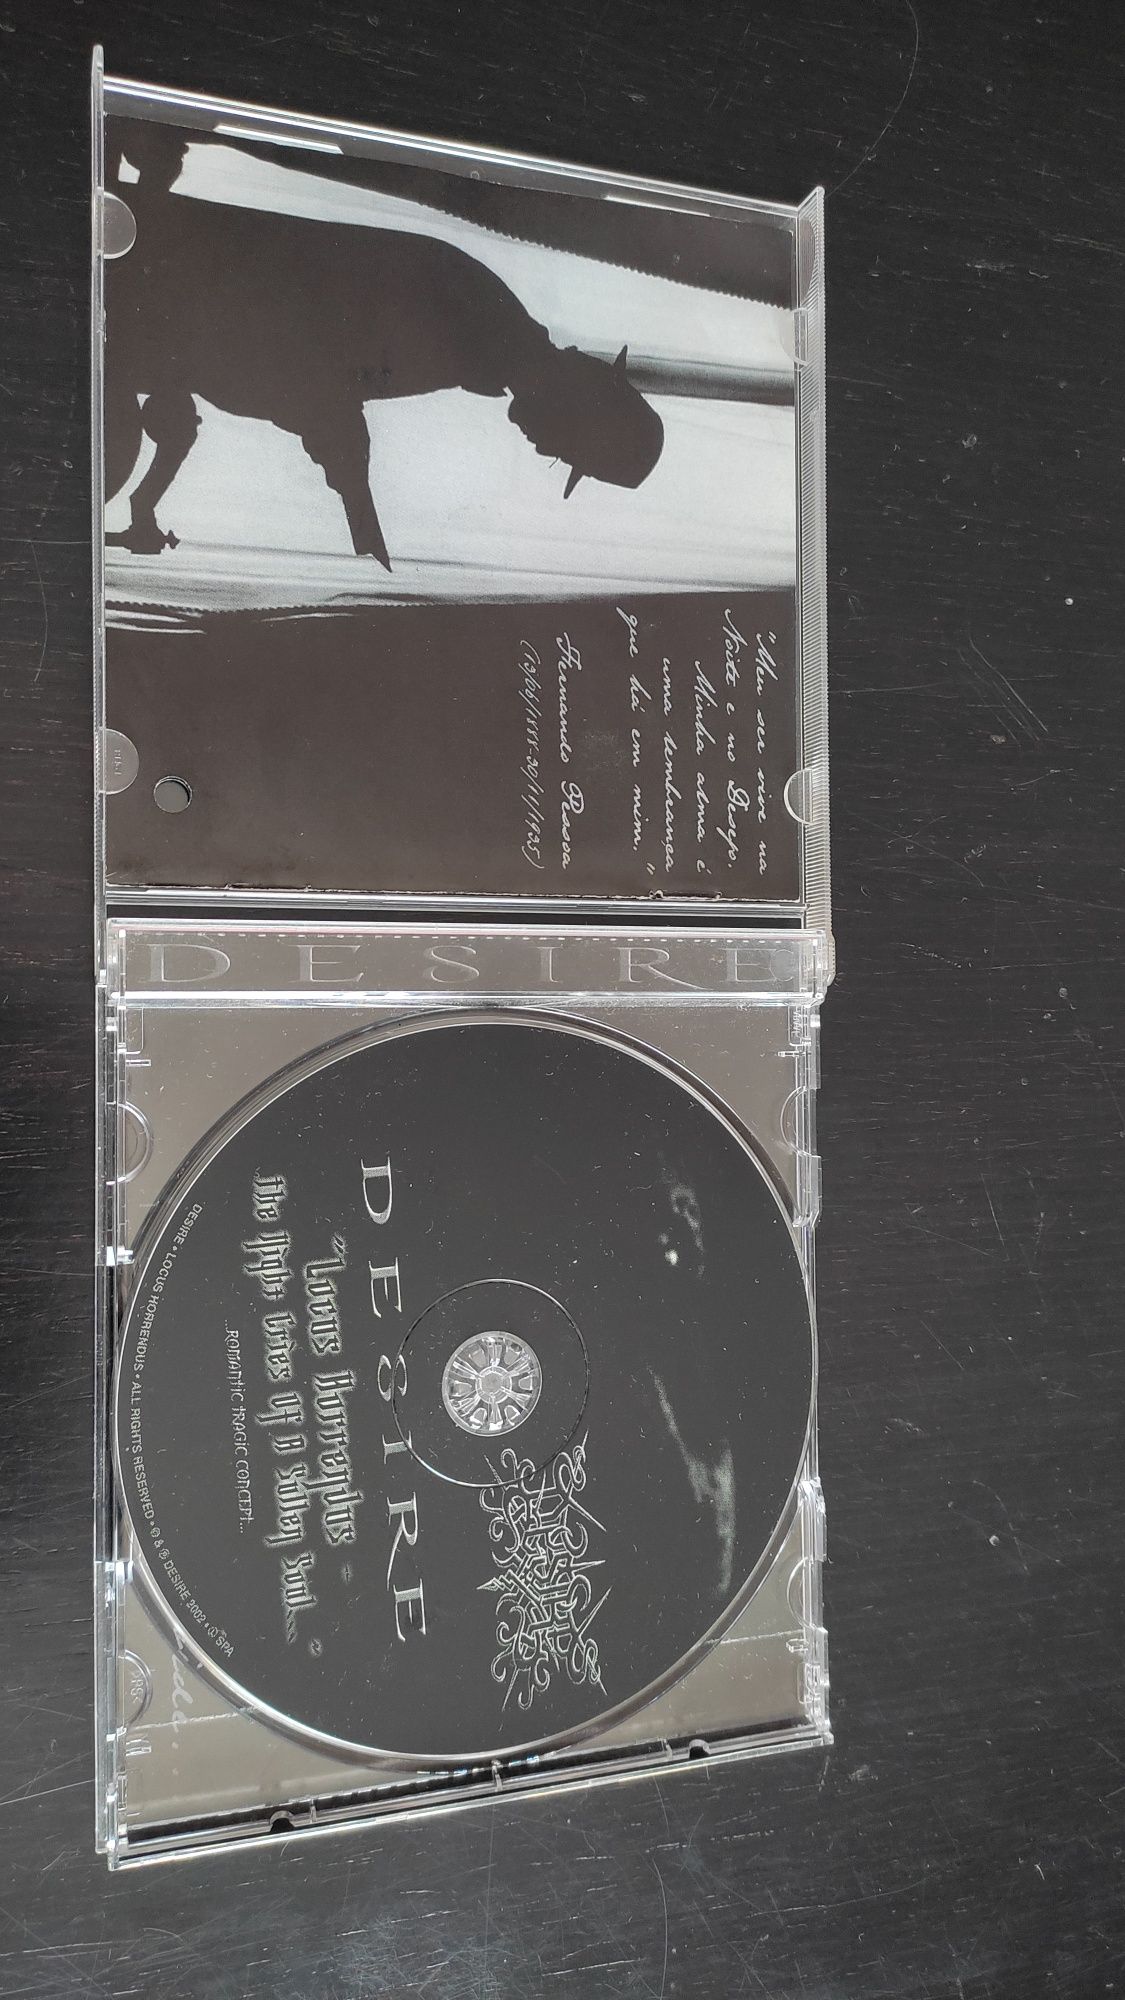 CD Desire " Locus Horrendus "